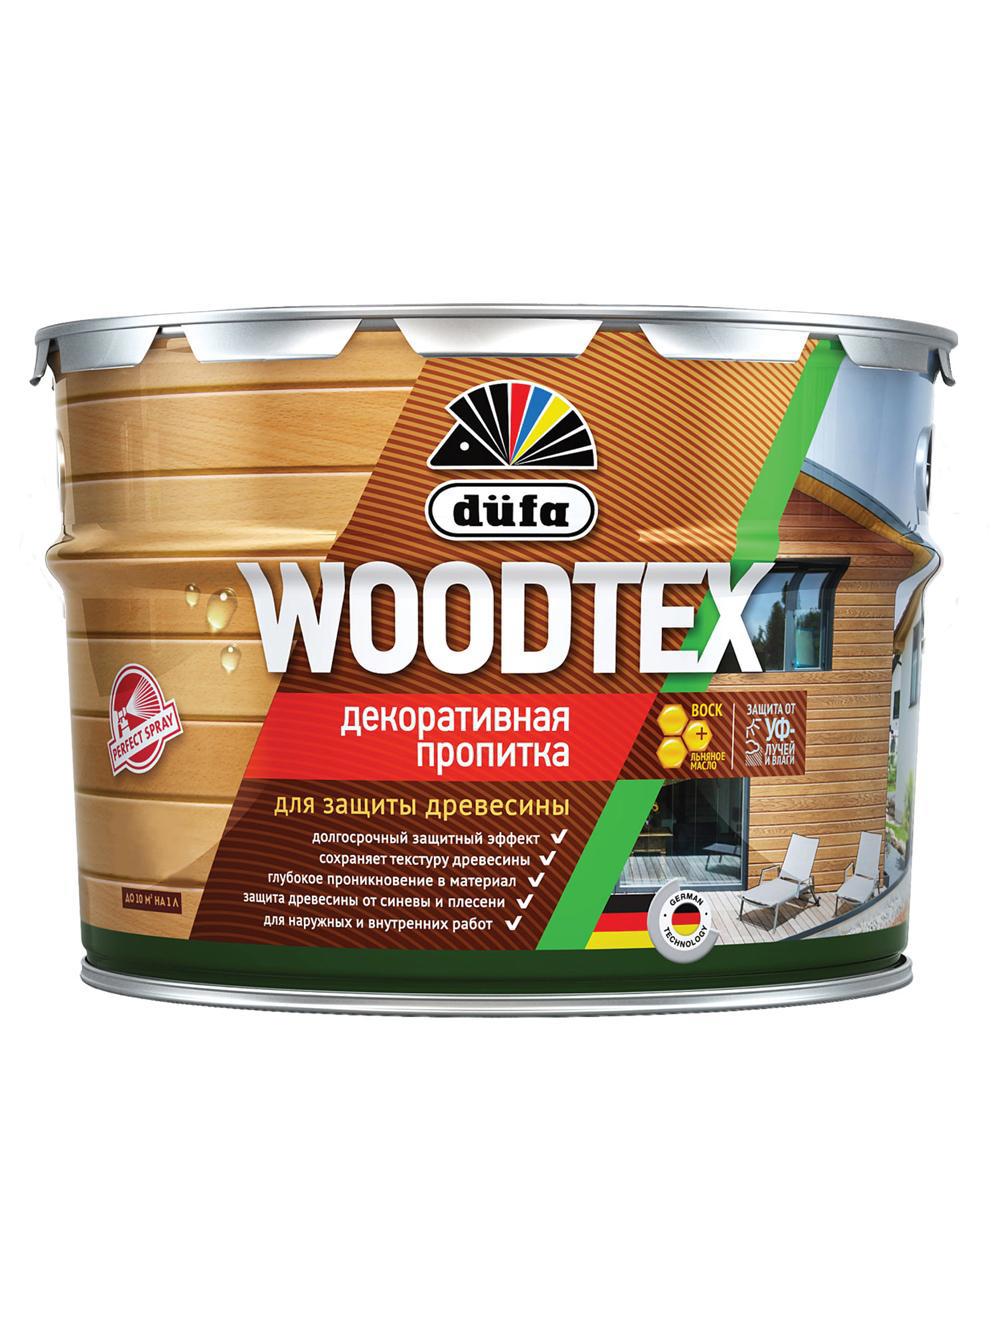 90194570 Пропитка декоративная для защиты древесины алкидная Woodtex орегон 0.9 л STLM-0128501 DUFA